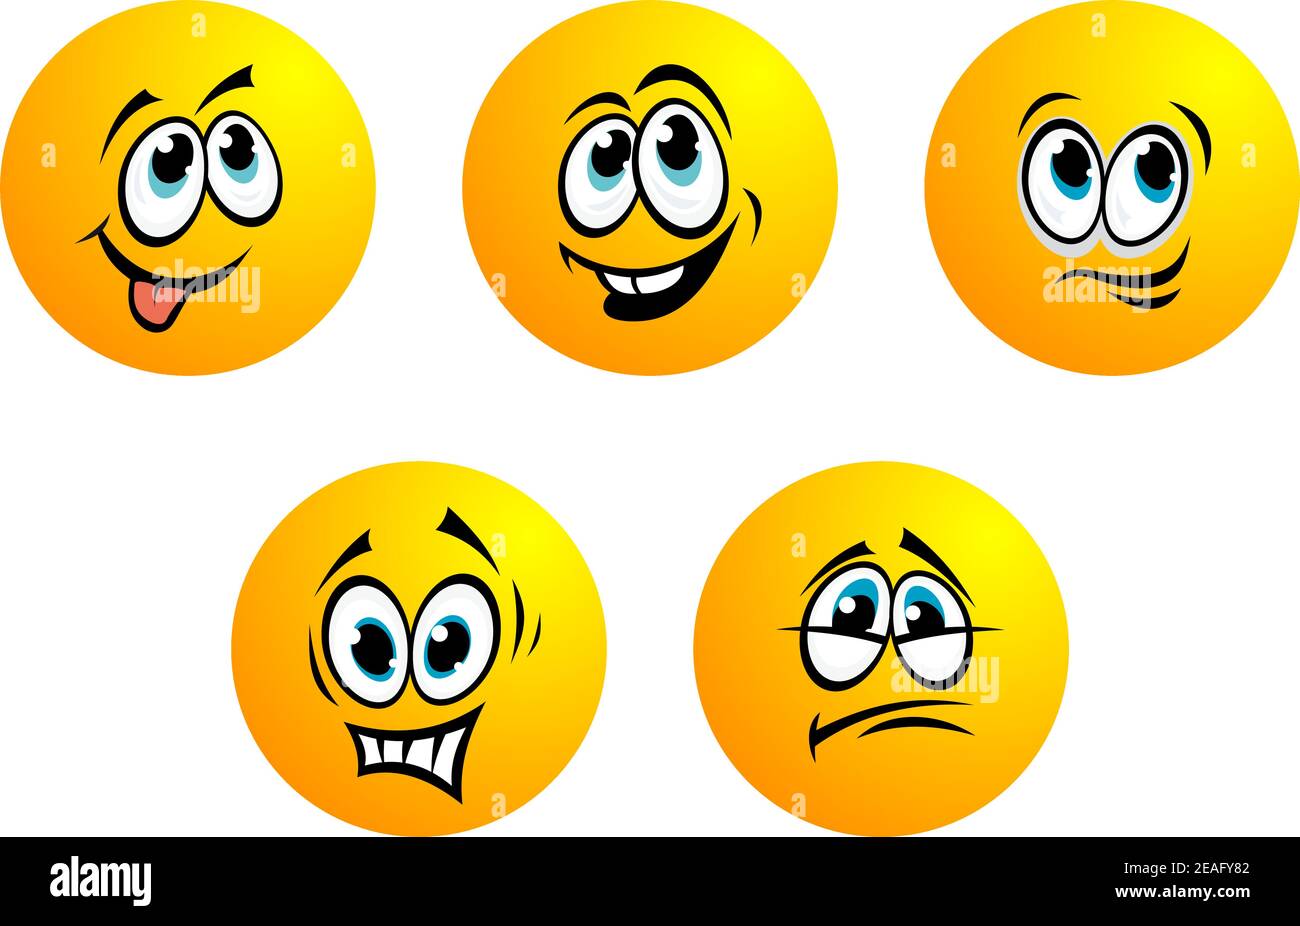 Cinque simpatiche emoticon vettoriali rotonde gialle con occhi blu che mostrano una serie di espressioni tra cui paura, delusione, sillante, sorridente e laug toothy Illustrazione Vettoriale